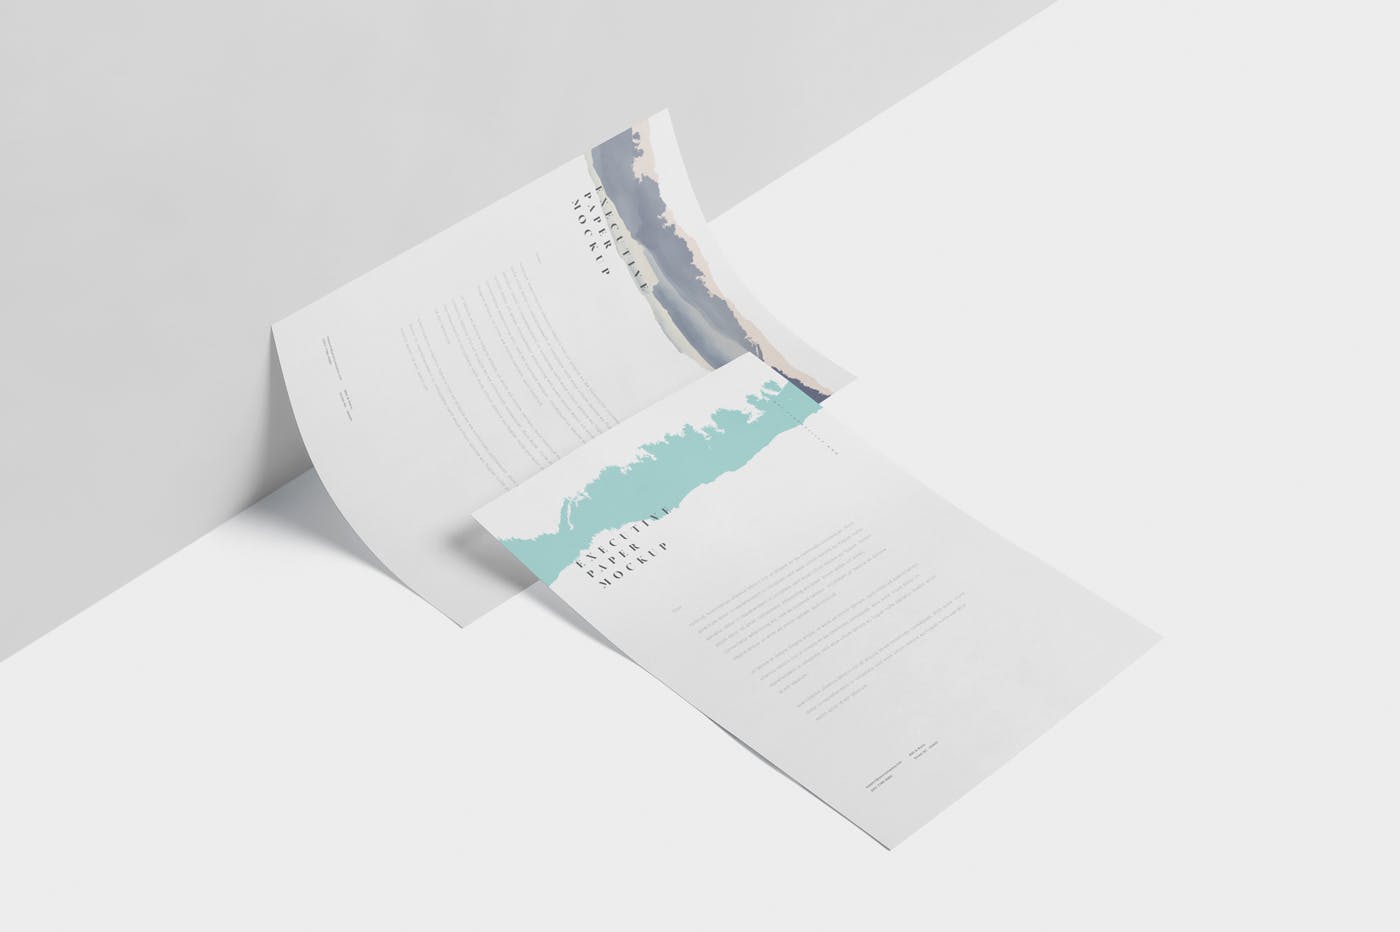 企业宣传单张设计效果图样机素材库精选 Executive Paper Mockup – 7×10 Inch Size插图(2)